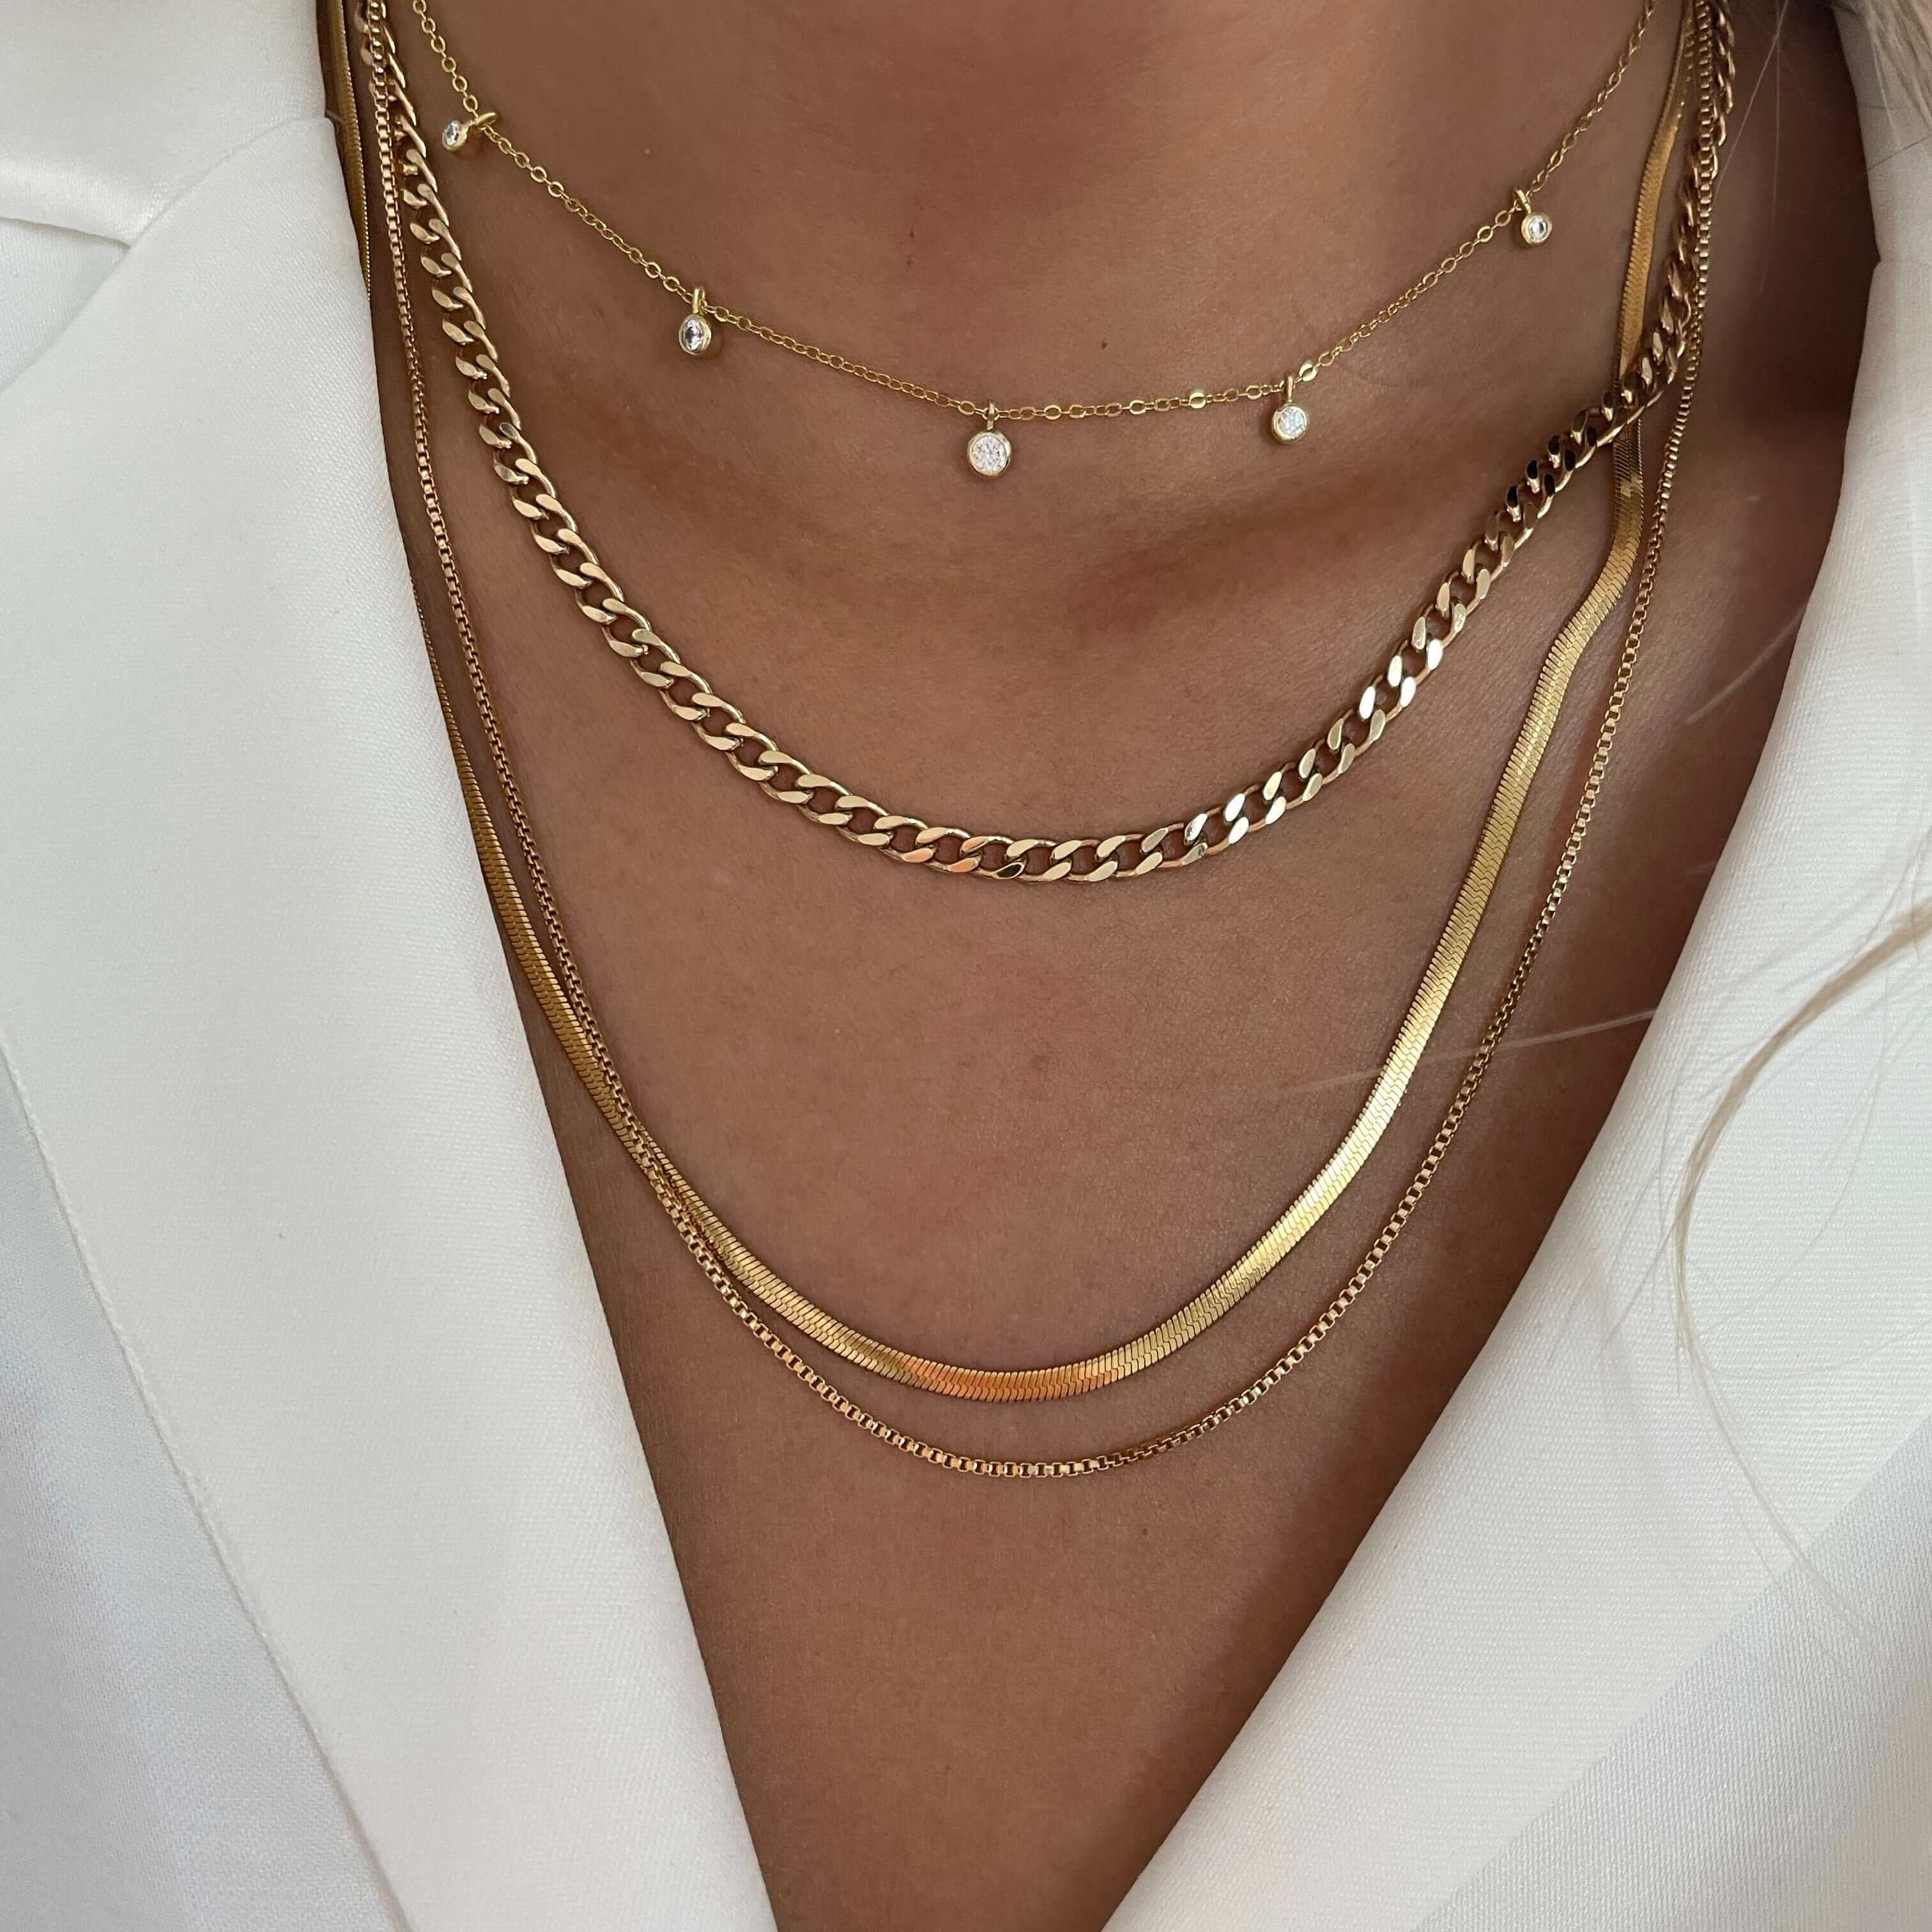 LE sensor necklace Box Chain Necklace 16”